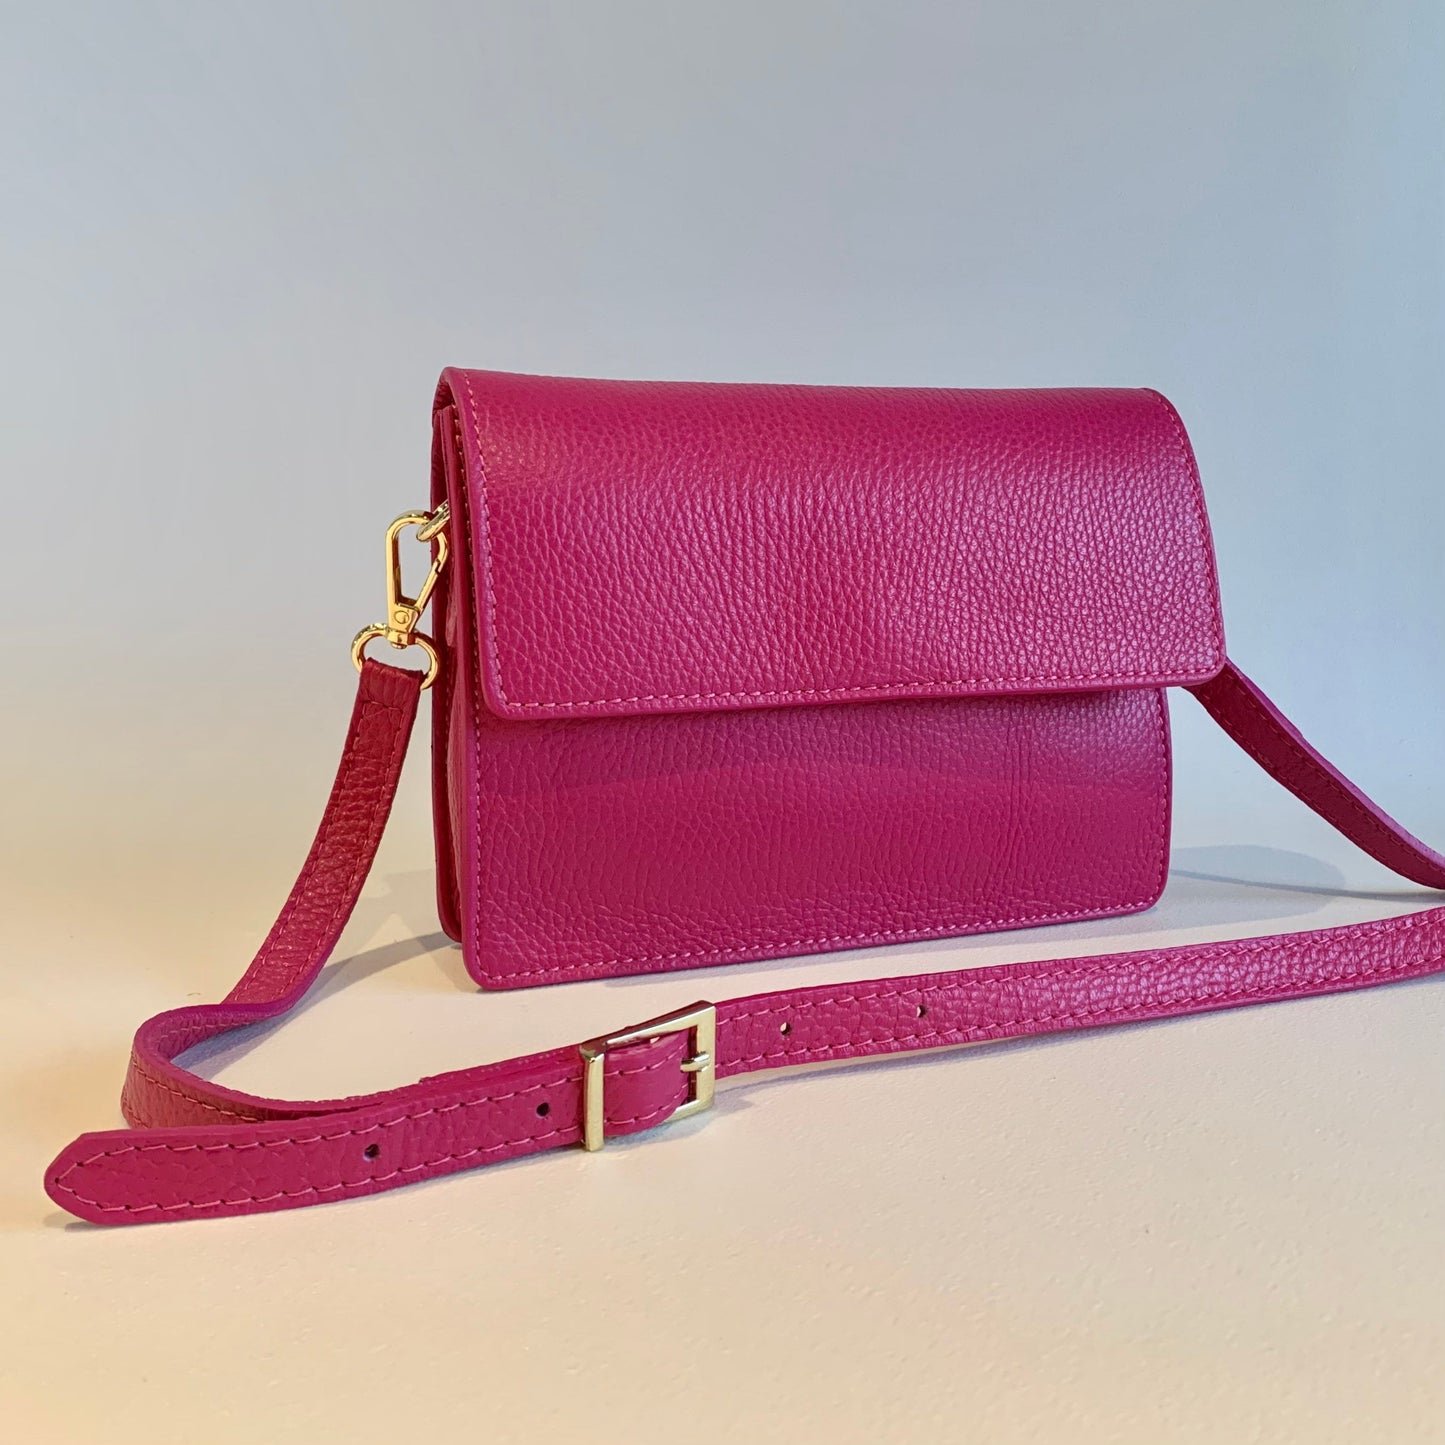 Fuchsia Leather Minimalistic Bag - Zoe